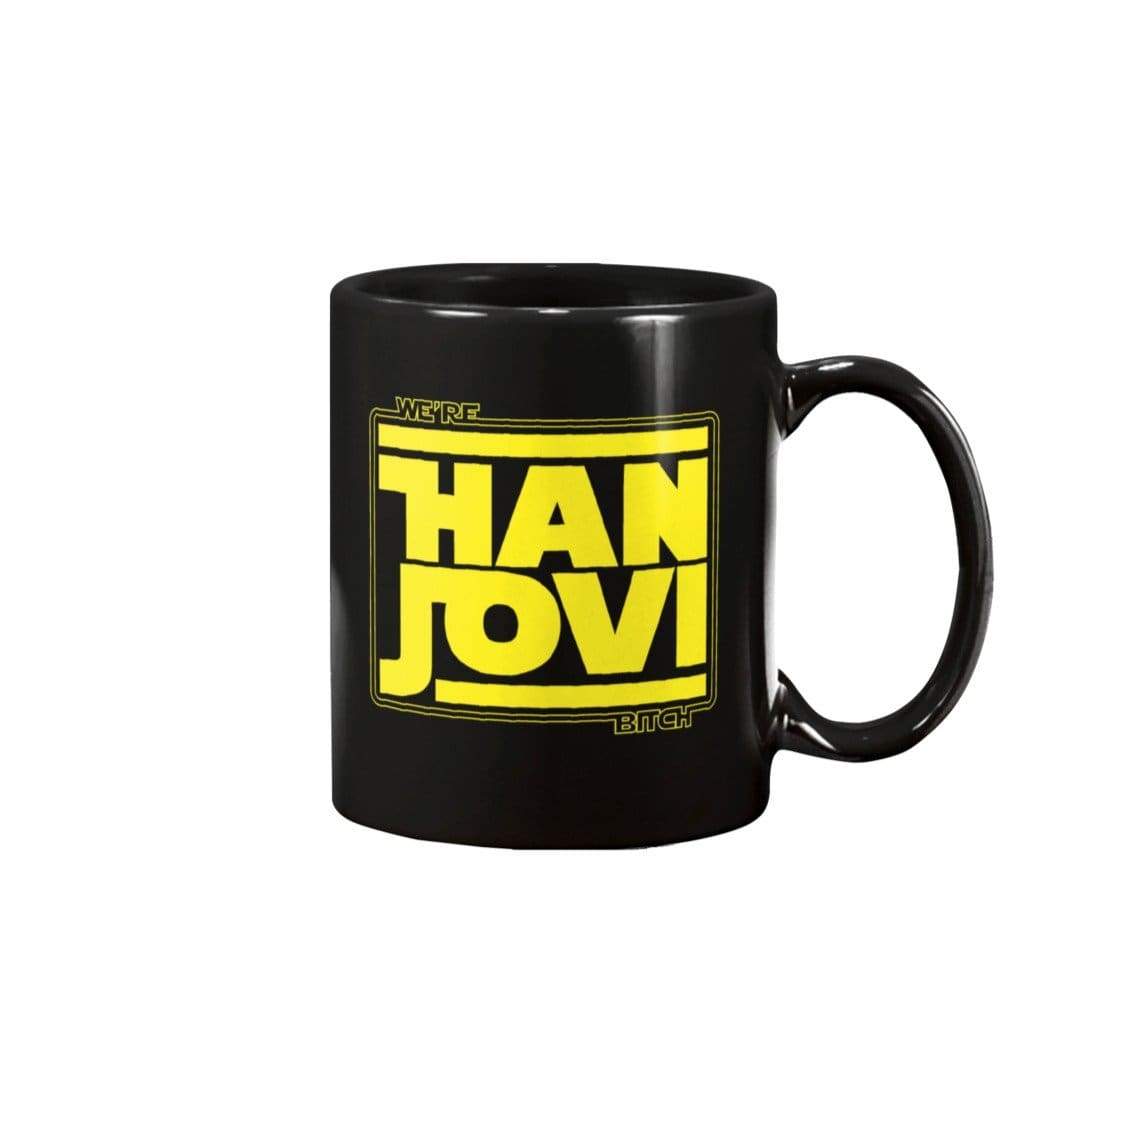 DSC We’re Han Jovi 15oz Coffee Mug - Black / 15OZ - Mugs